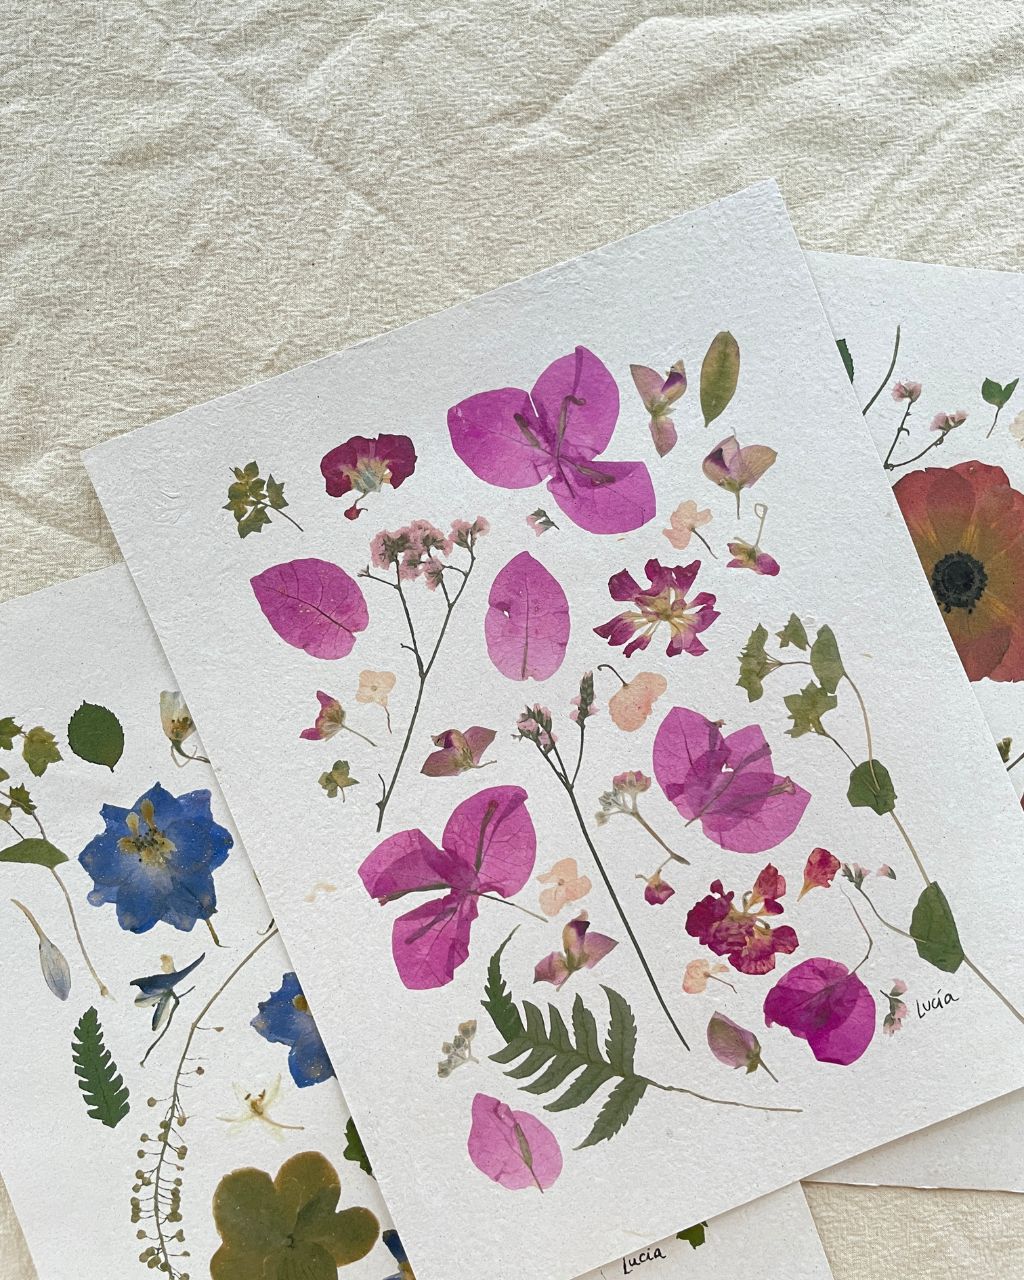 Prints de collage de flores colombianas prensadas autografiadas por la artista.